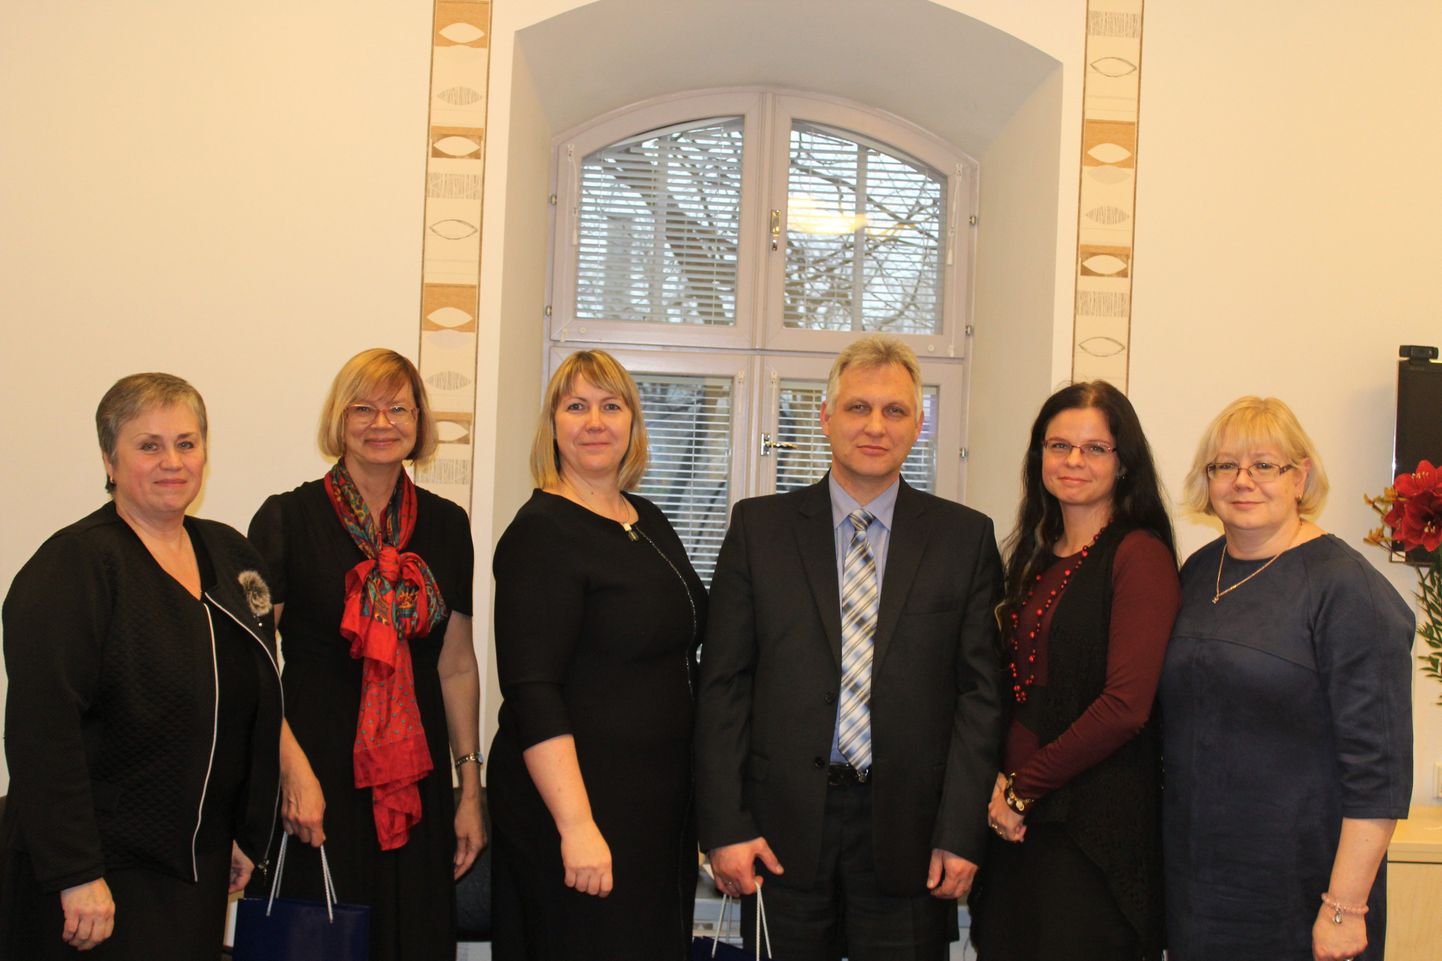 Lääne ringkonnaprokuratuuri kutsel väisasid teisipäeval Pärnut lõunanaabrite Vidzeme regiooni prokuratuuri esindajad, et hõlbustada edasist koostööd piiriüleste kuritegude lahendamisel ja rahvusvahelist koostööd.